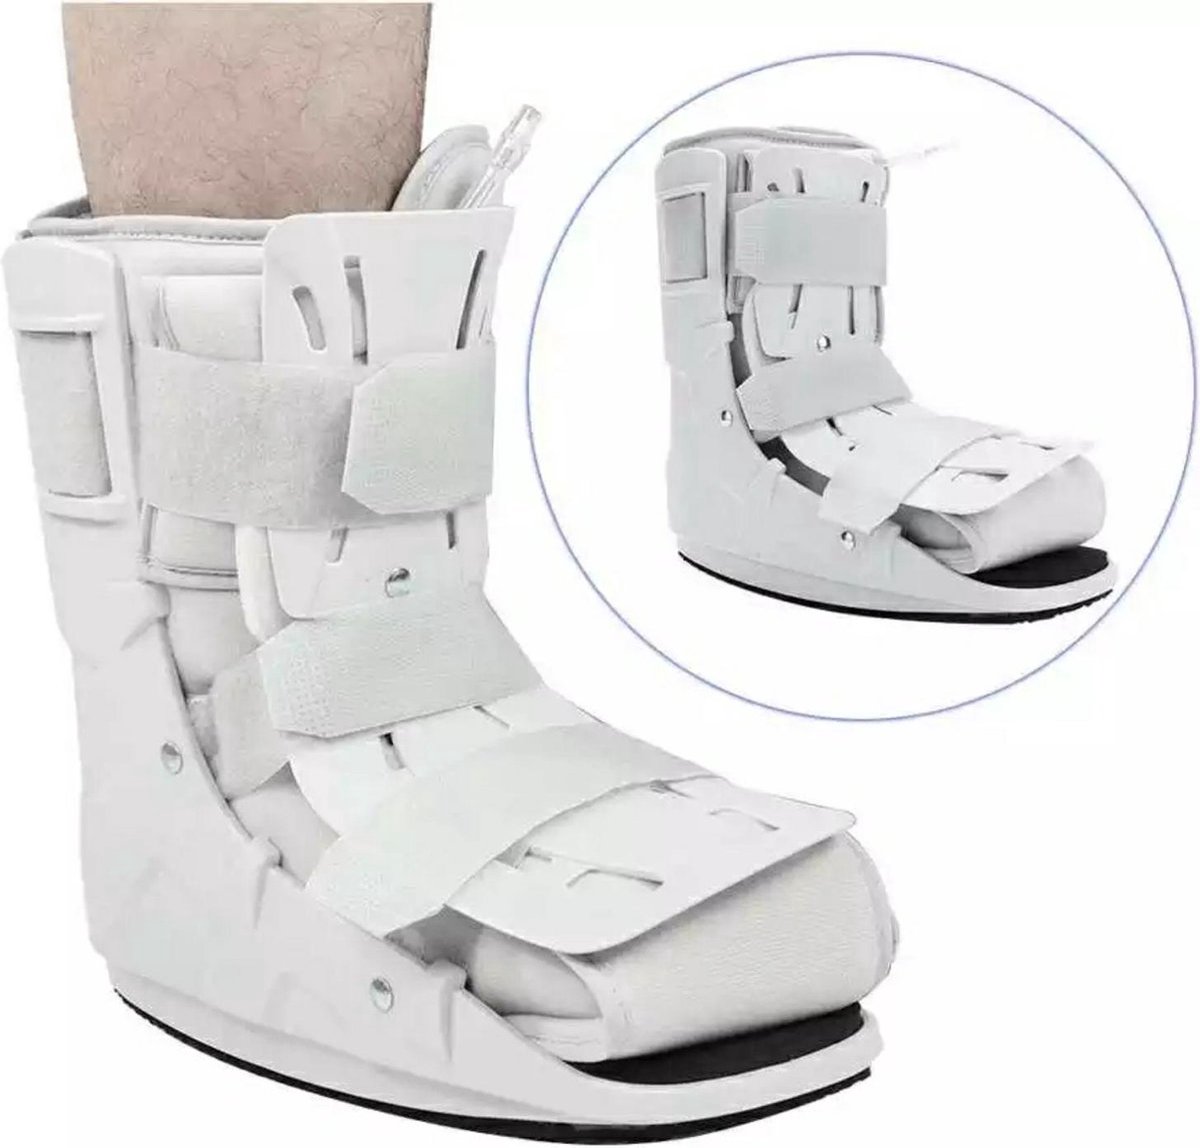 Ankle brace, voet brace, enkelbrace, enkel brace Maat S, boots, enkel ondersteuning, air walker, enkel brace, orthopedic enkelbrace.